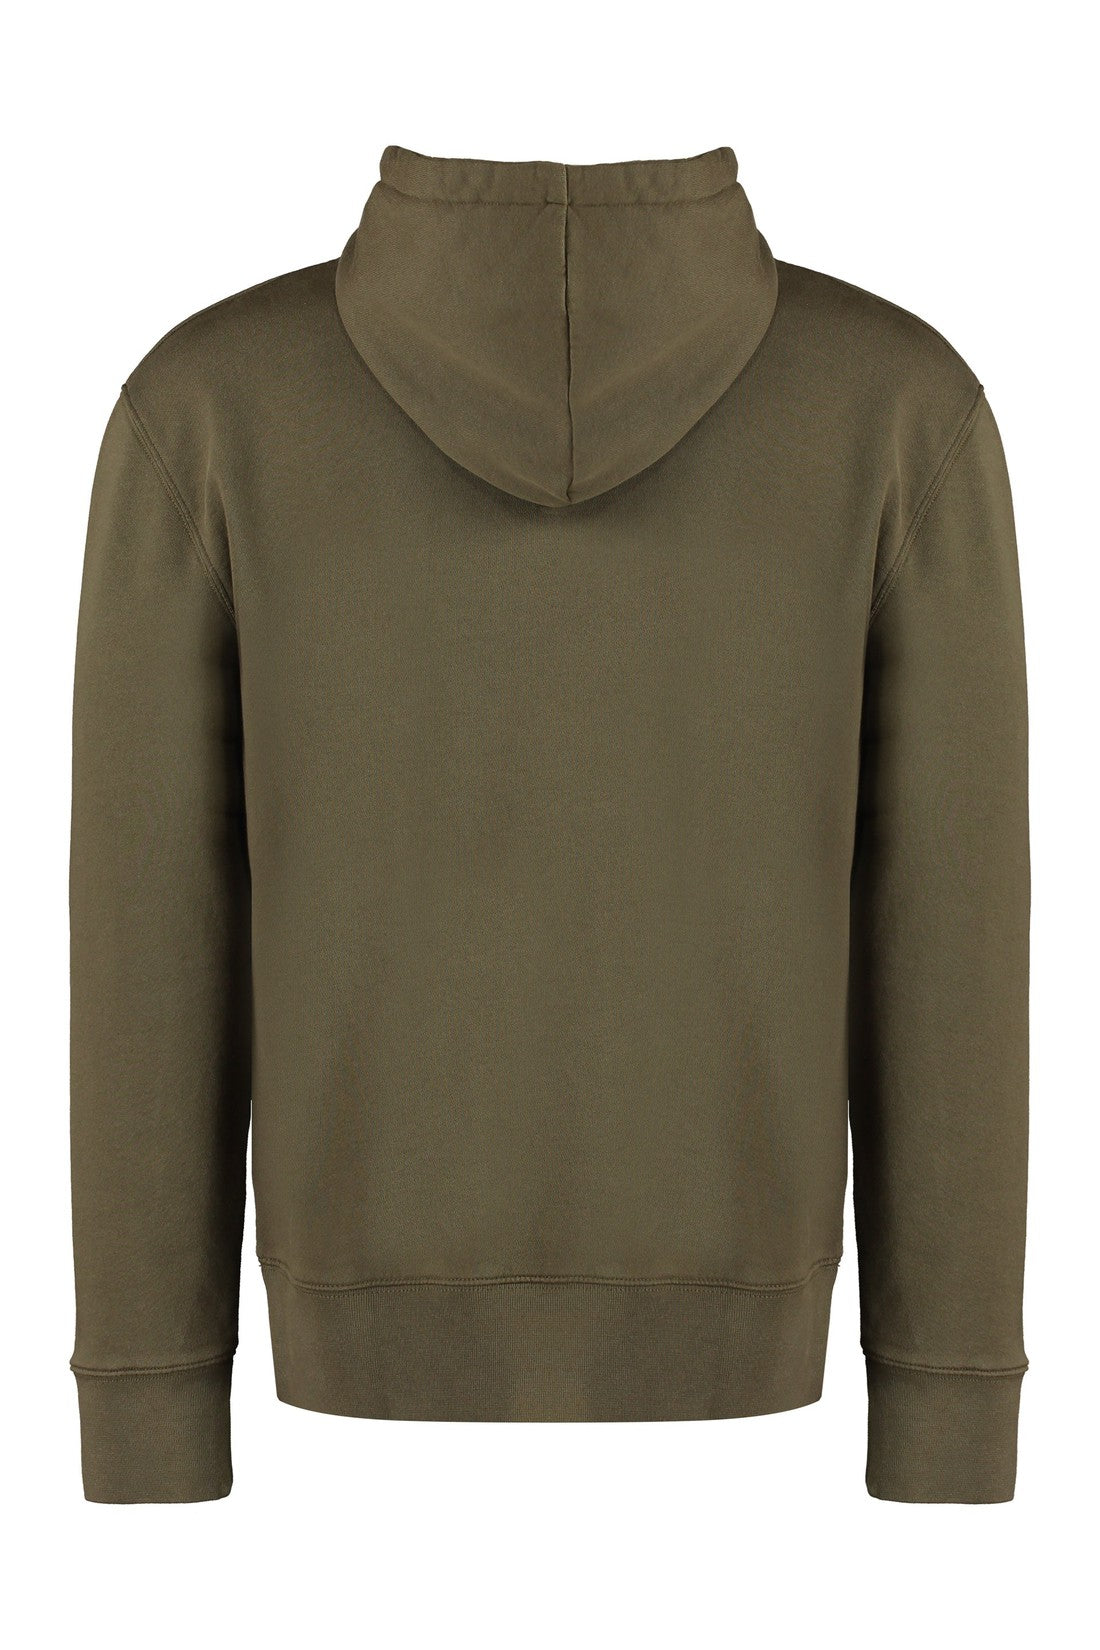 Maison Kitsuné-OUTLET-SALE-Hooded sweatshirt-ARCHIVIST